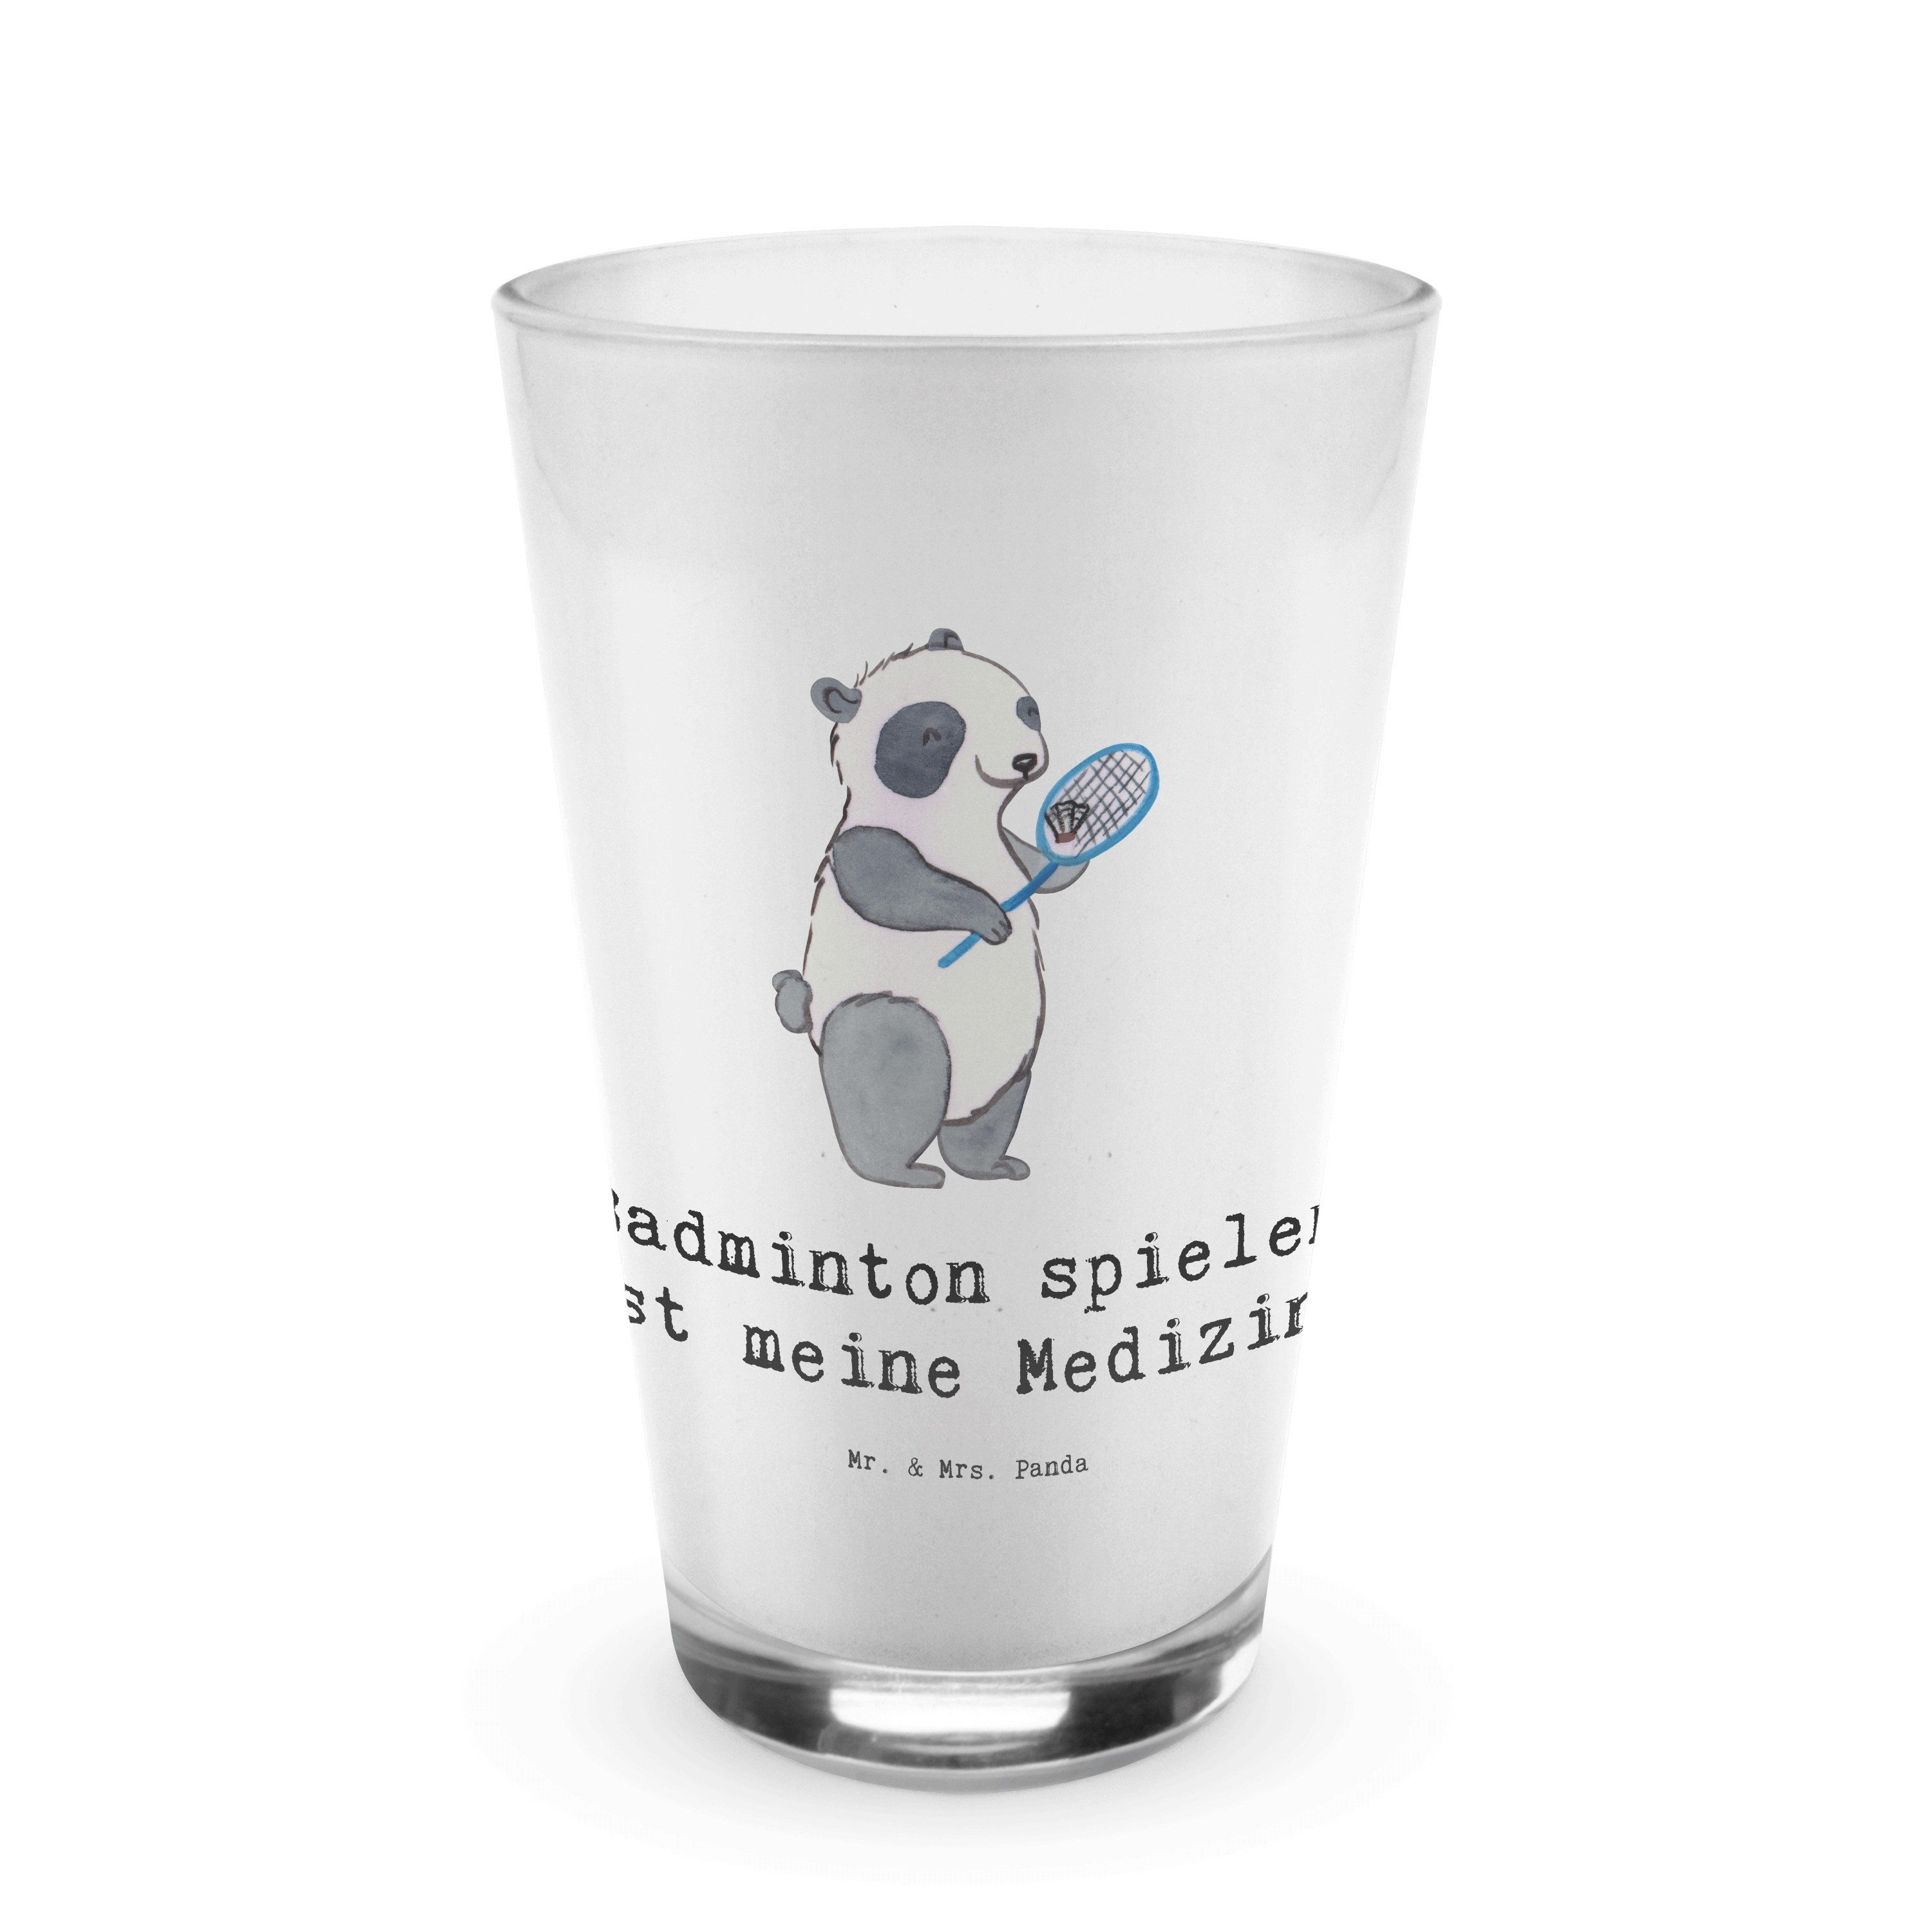 Mr. & Mrs. Panda Glas Panda Badminton - Transparent - Geschenk, Schenken, Auszeichnung, La, Premium Glas, Edles Matt-Design